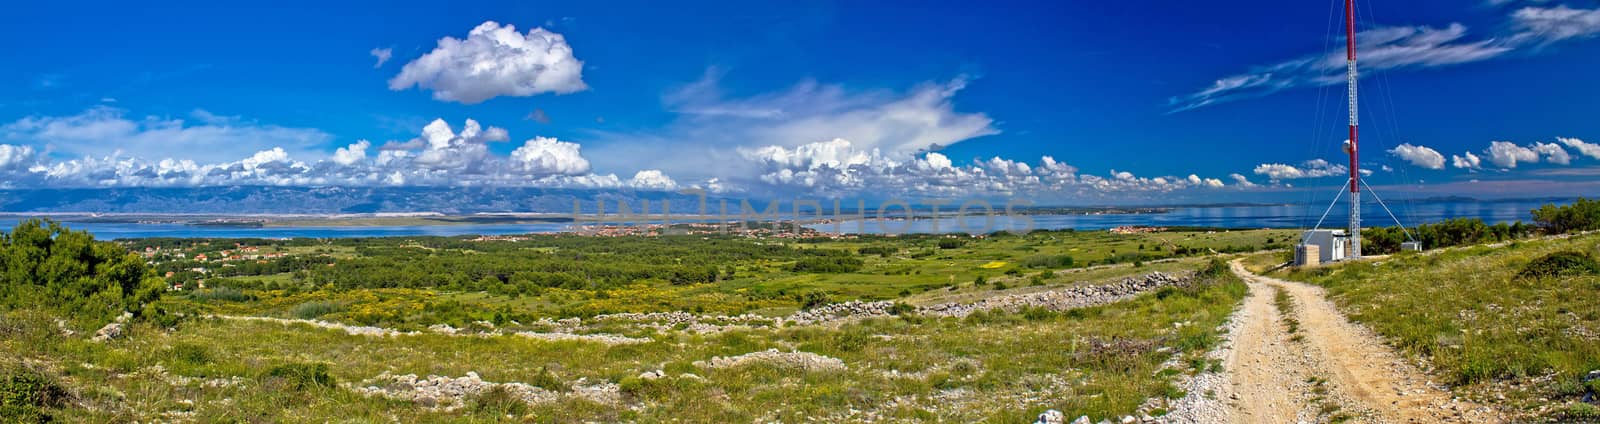 Island of Vir panoramic view, Dalmatia, Croatia